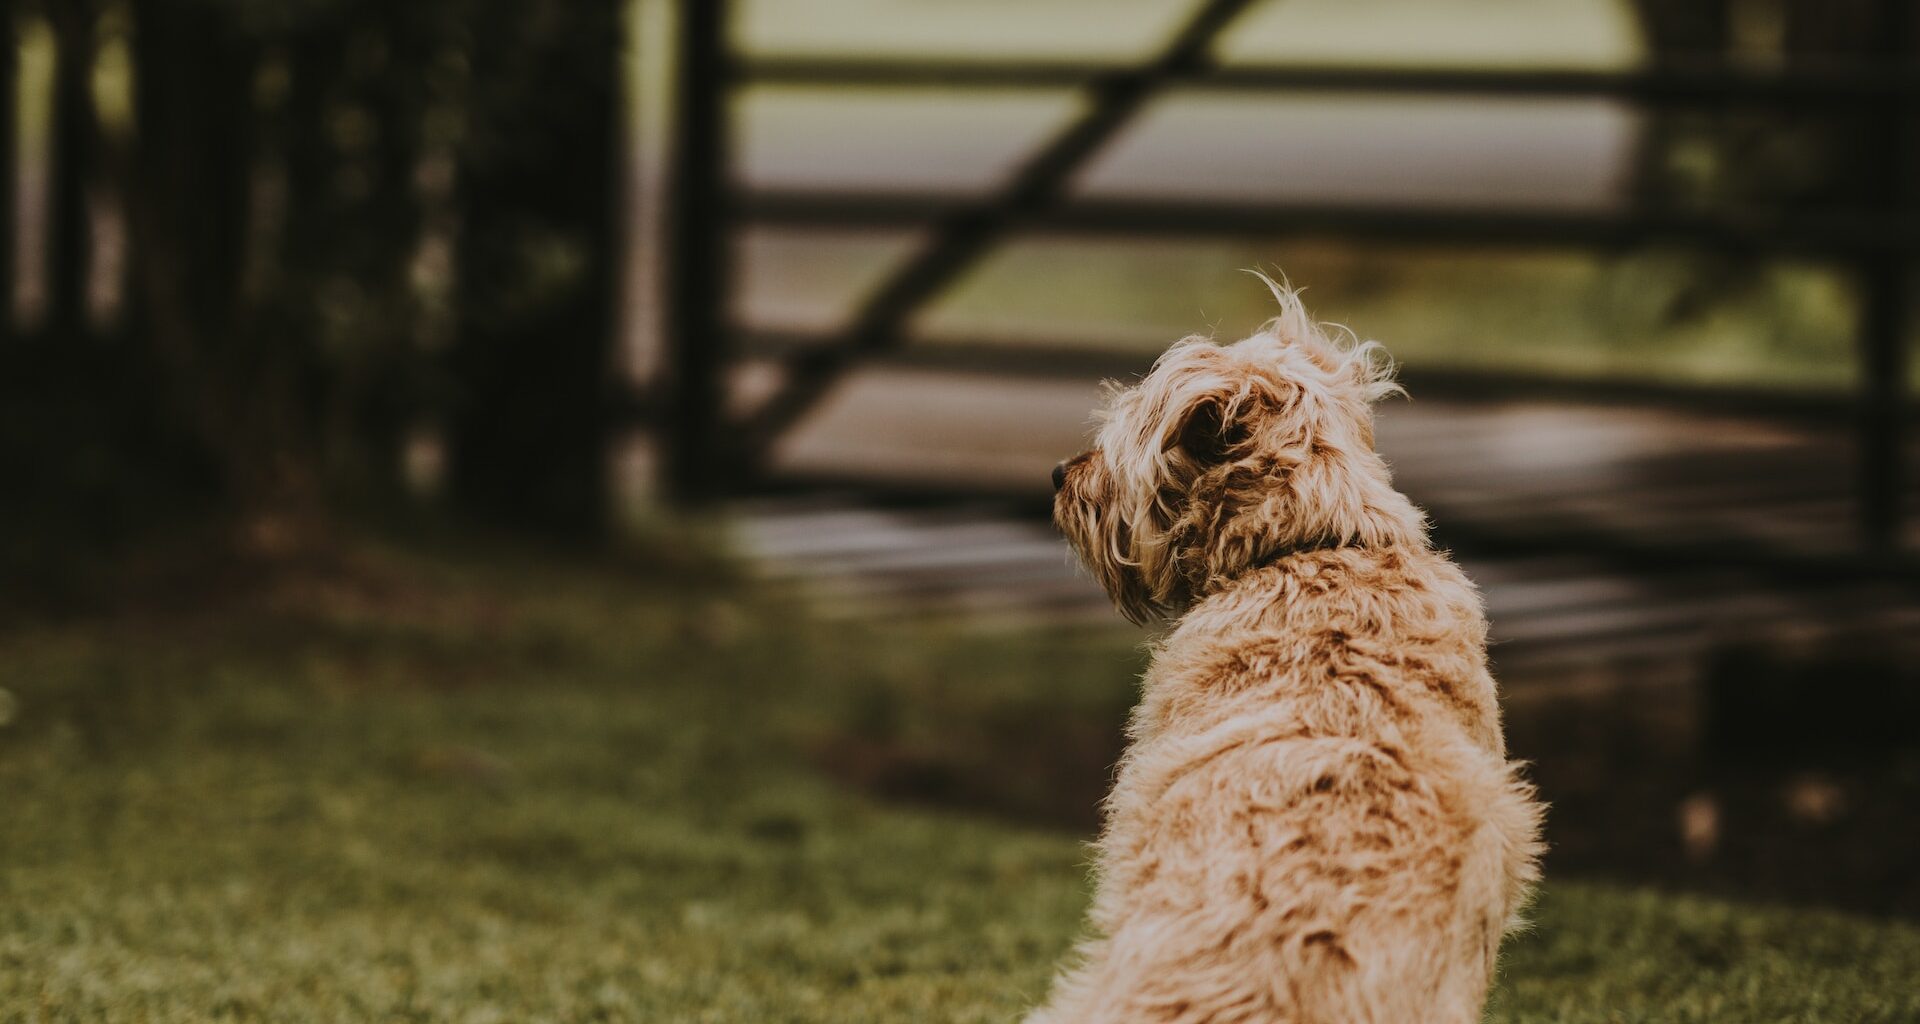 średni, jasny pies siedzący na trawie przy płocie